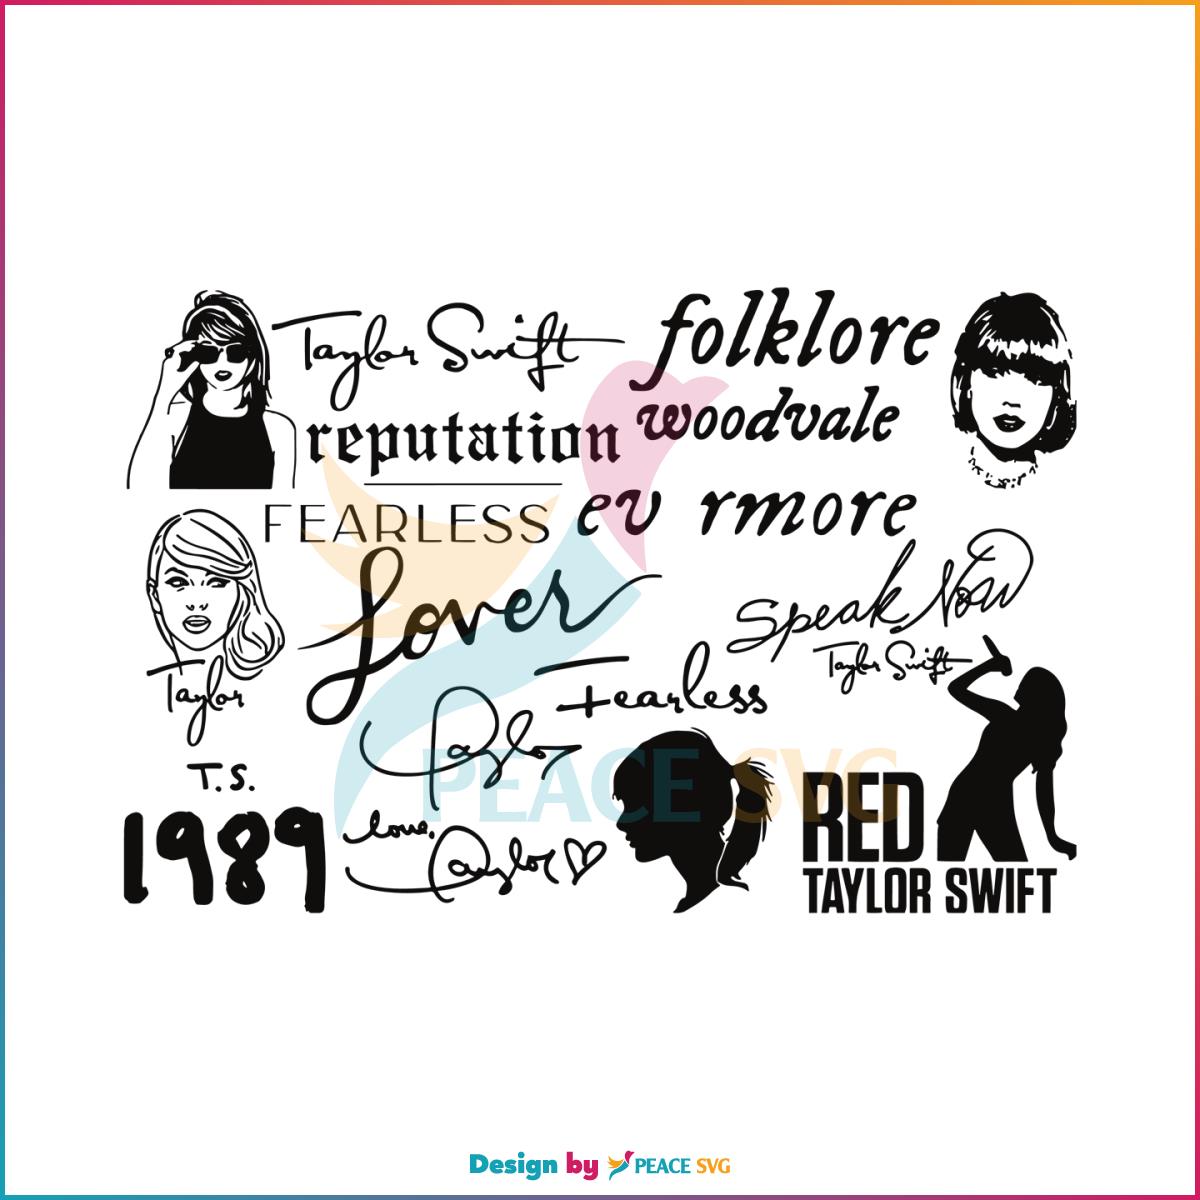 Taylor Swift Tour Taylor Albums SVG Graphic Design File » PeaceSVG